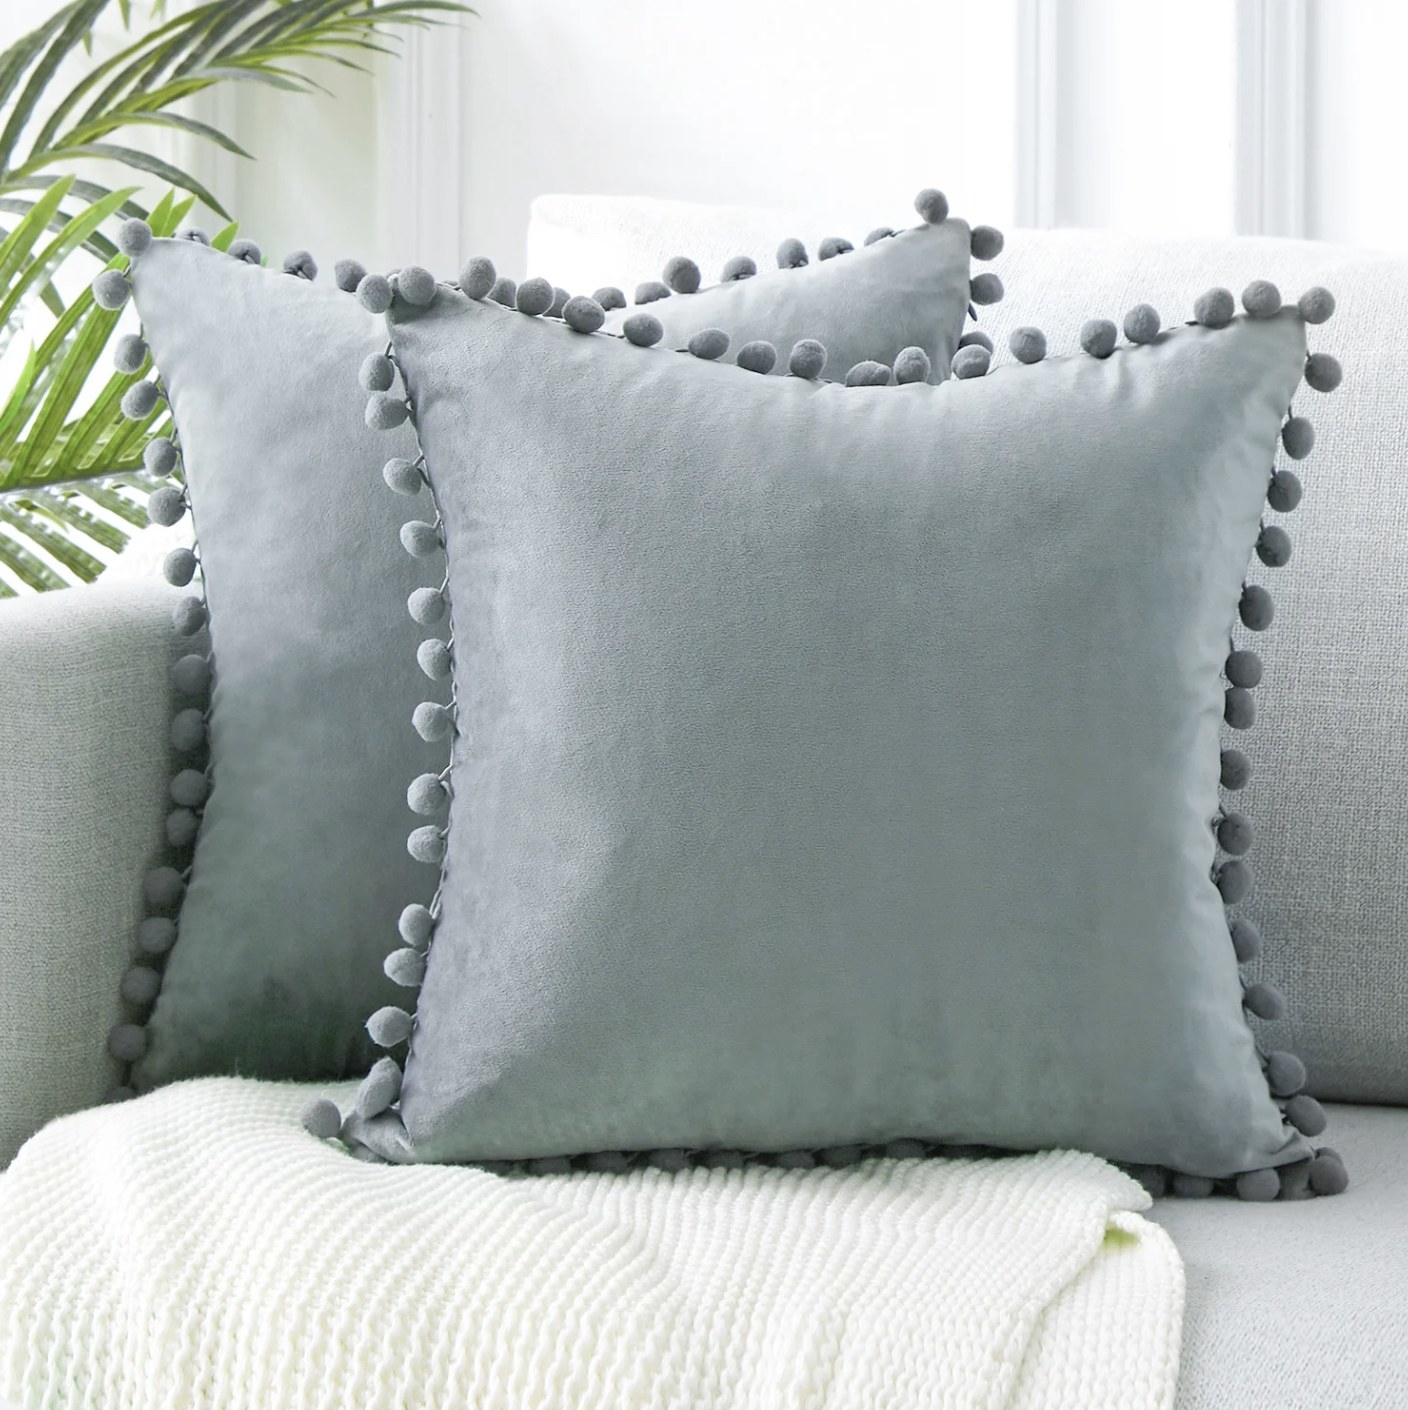 Two grey throw pillows